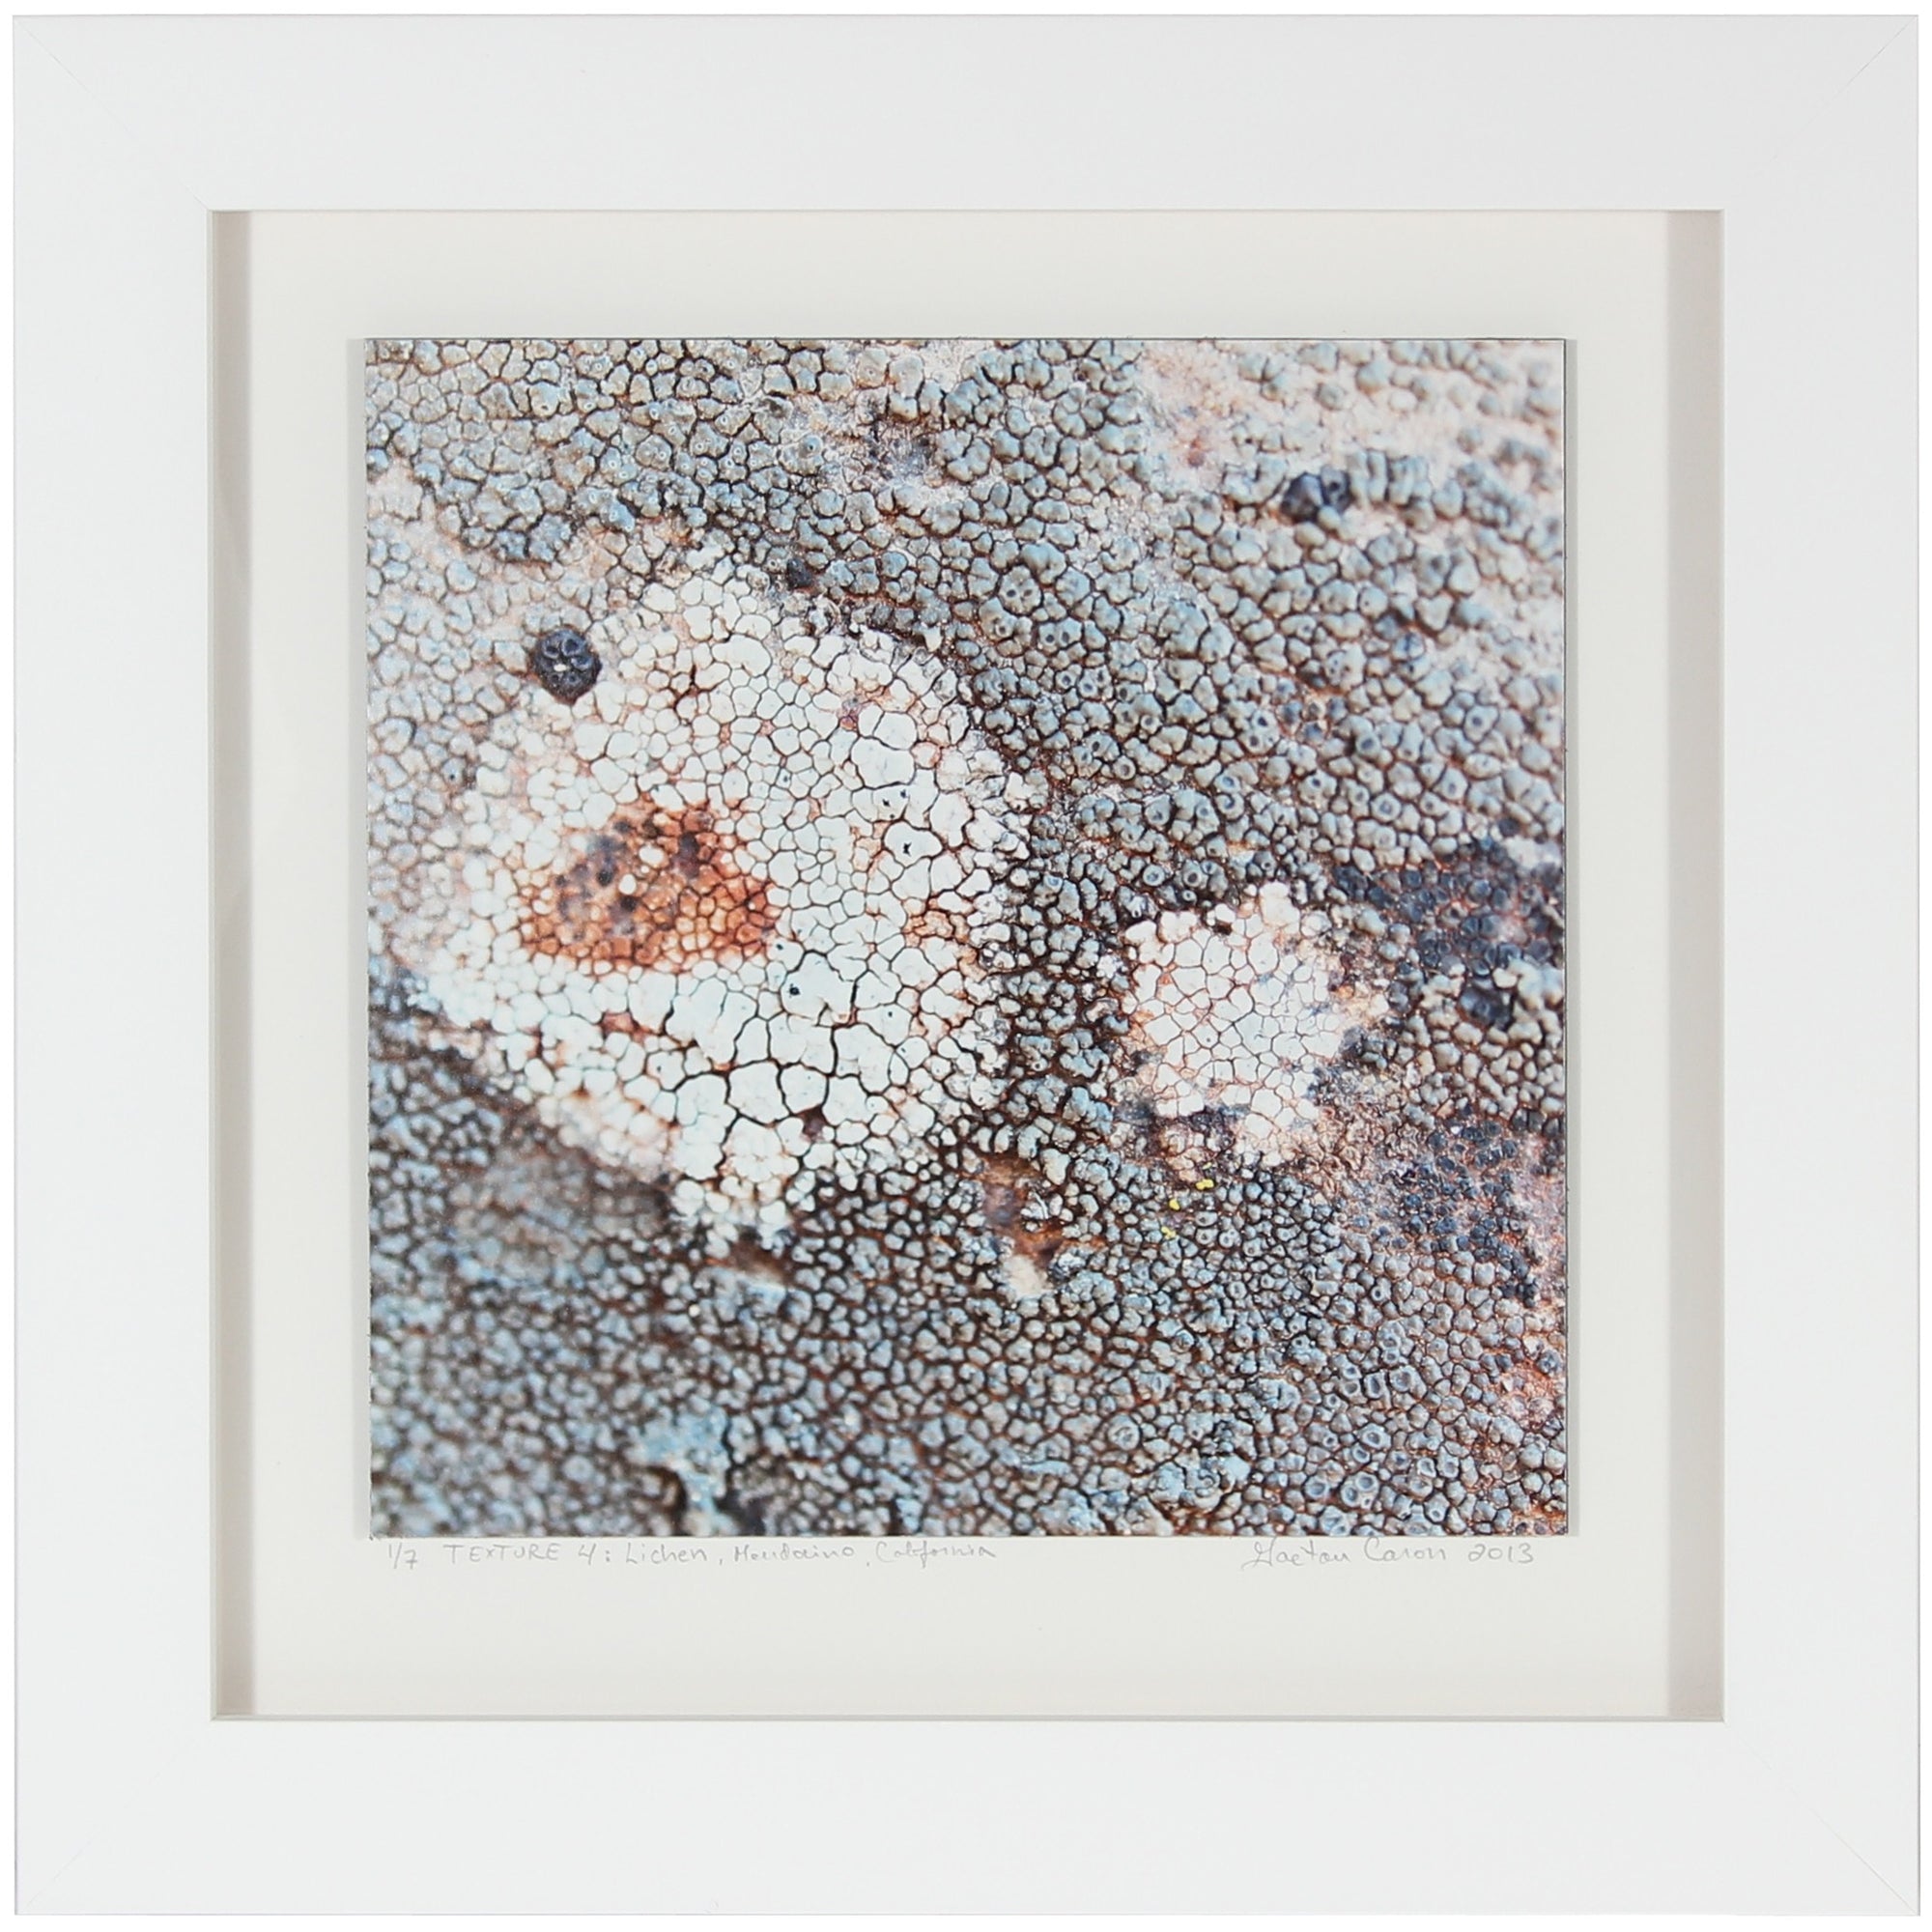 <I>Texture 4: Lichen</I><br>Mendocino, California, 2013<br><br>GC0354